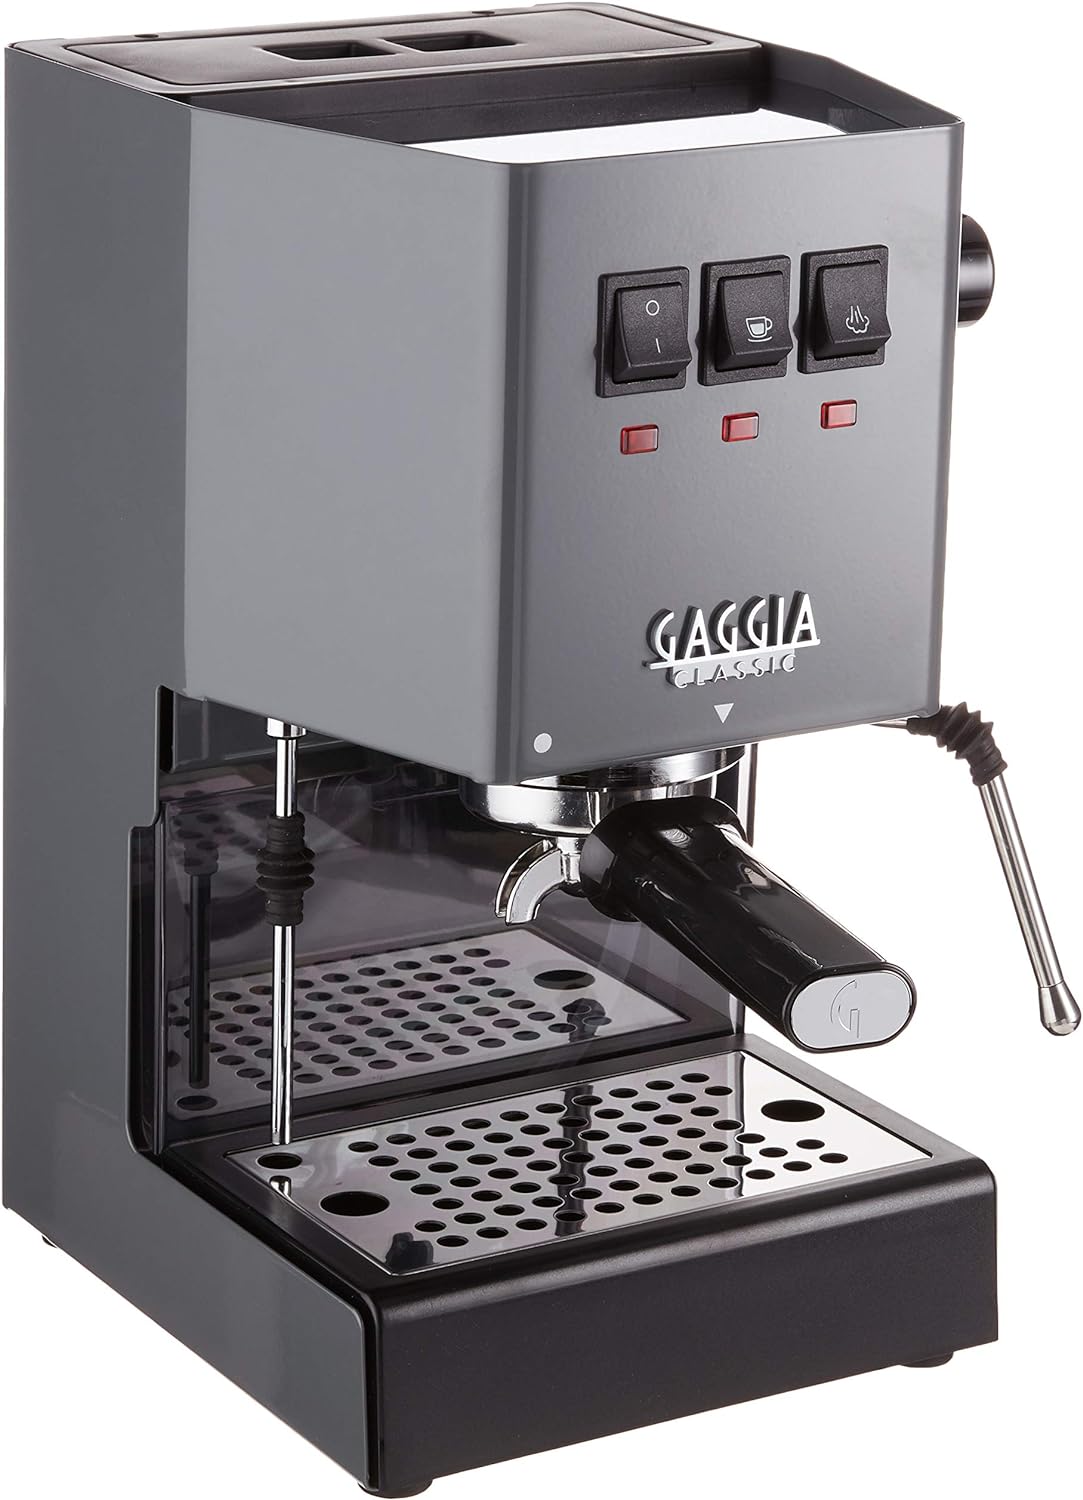 Gaggia RI9380/51 Espresso Machine Review